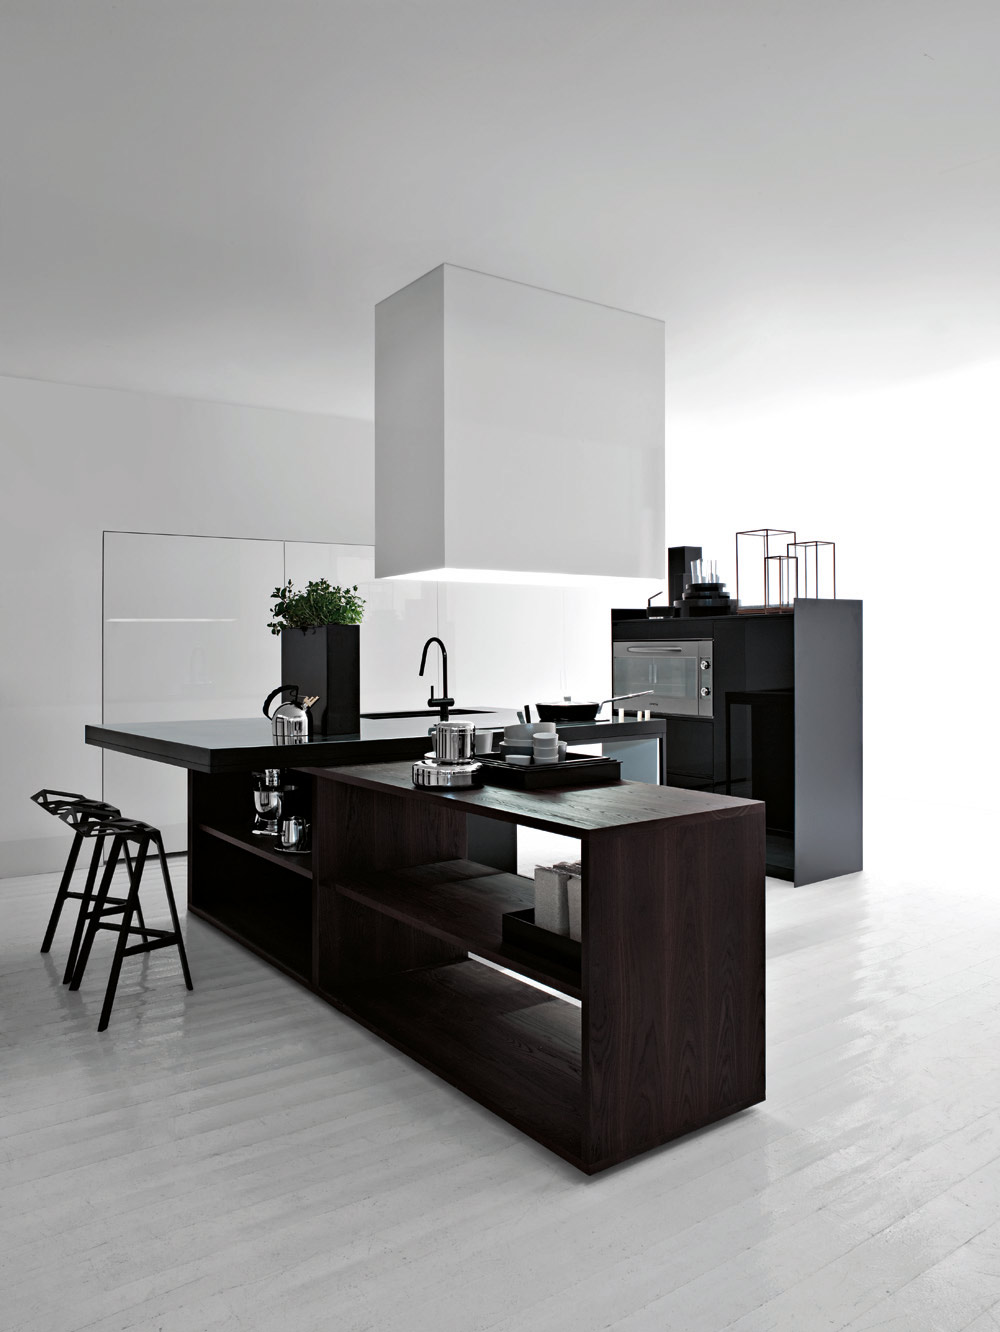 Black and White Kitchen Interior Design